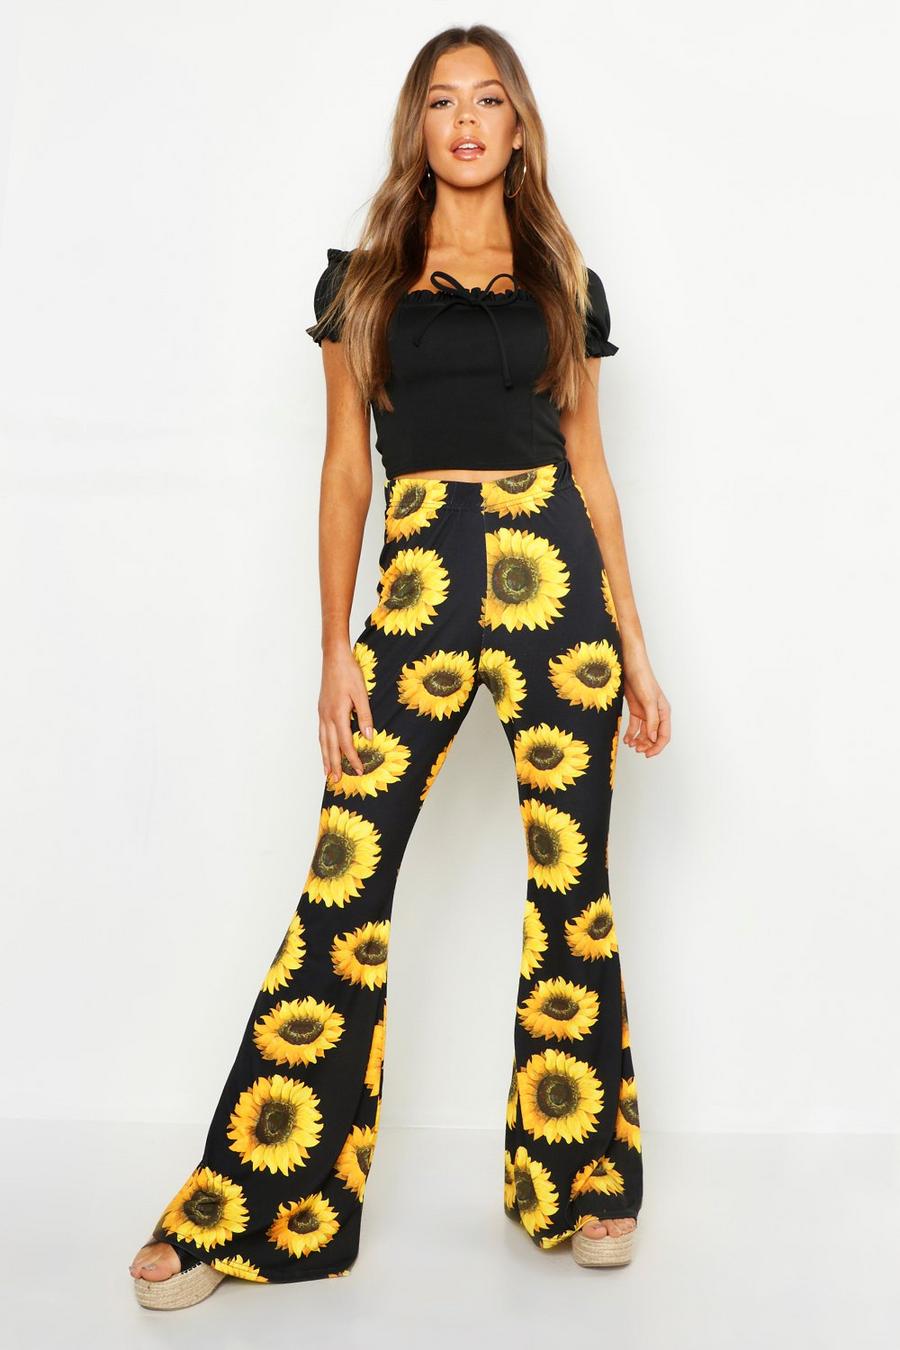 https://media.boohoo.com/i/boohoo/fzz96237_black_xl/female-black-sunflower-kick-flare-trousers/?w=900&qlt=default&fmt.jp2.qlt=70&fmt=auto&sm=fit